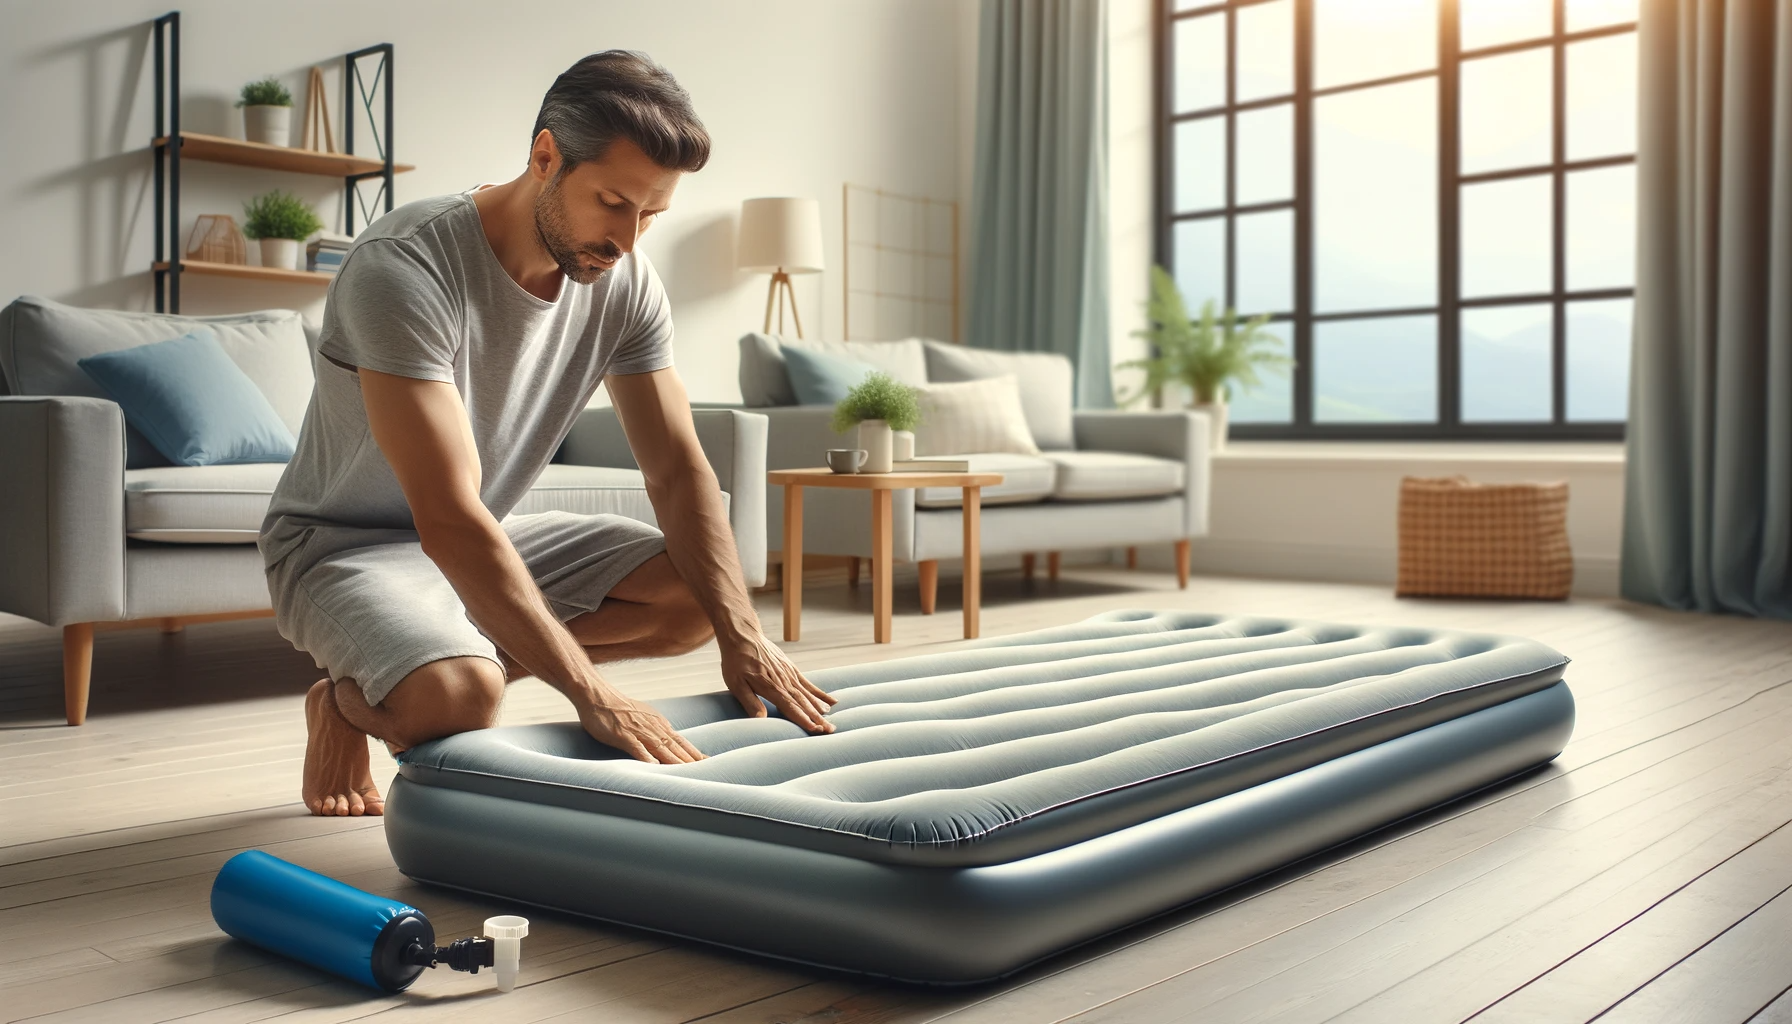 How to fold intex air mattress